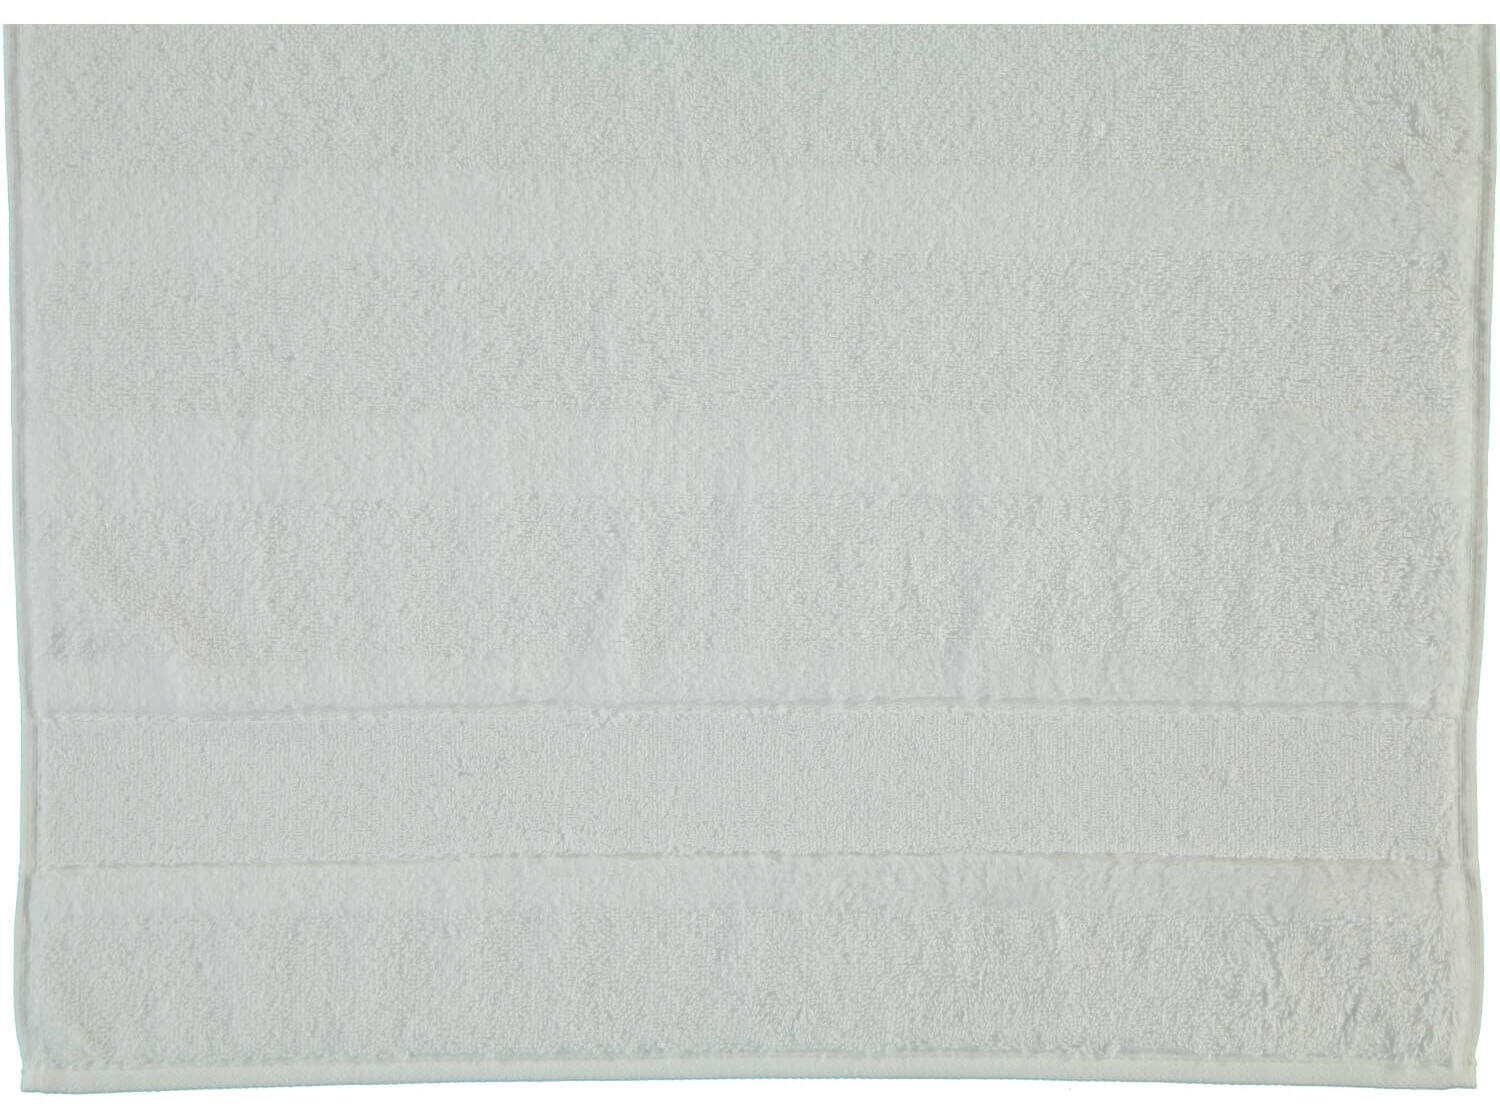 Хлопковое полотенце Noblesse Uni Weib ☞ Размер: 50 x 100 см